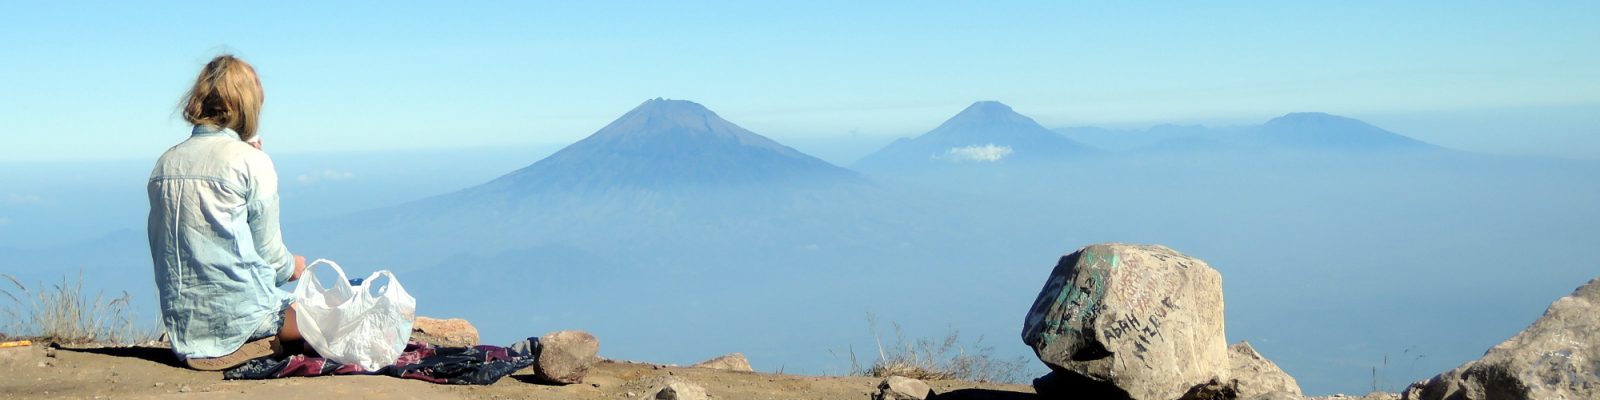 volcano love view from gunung merbabu